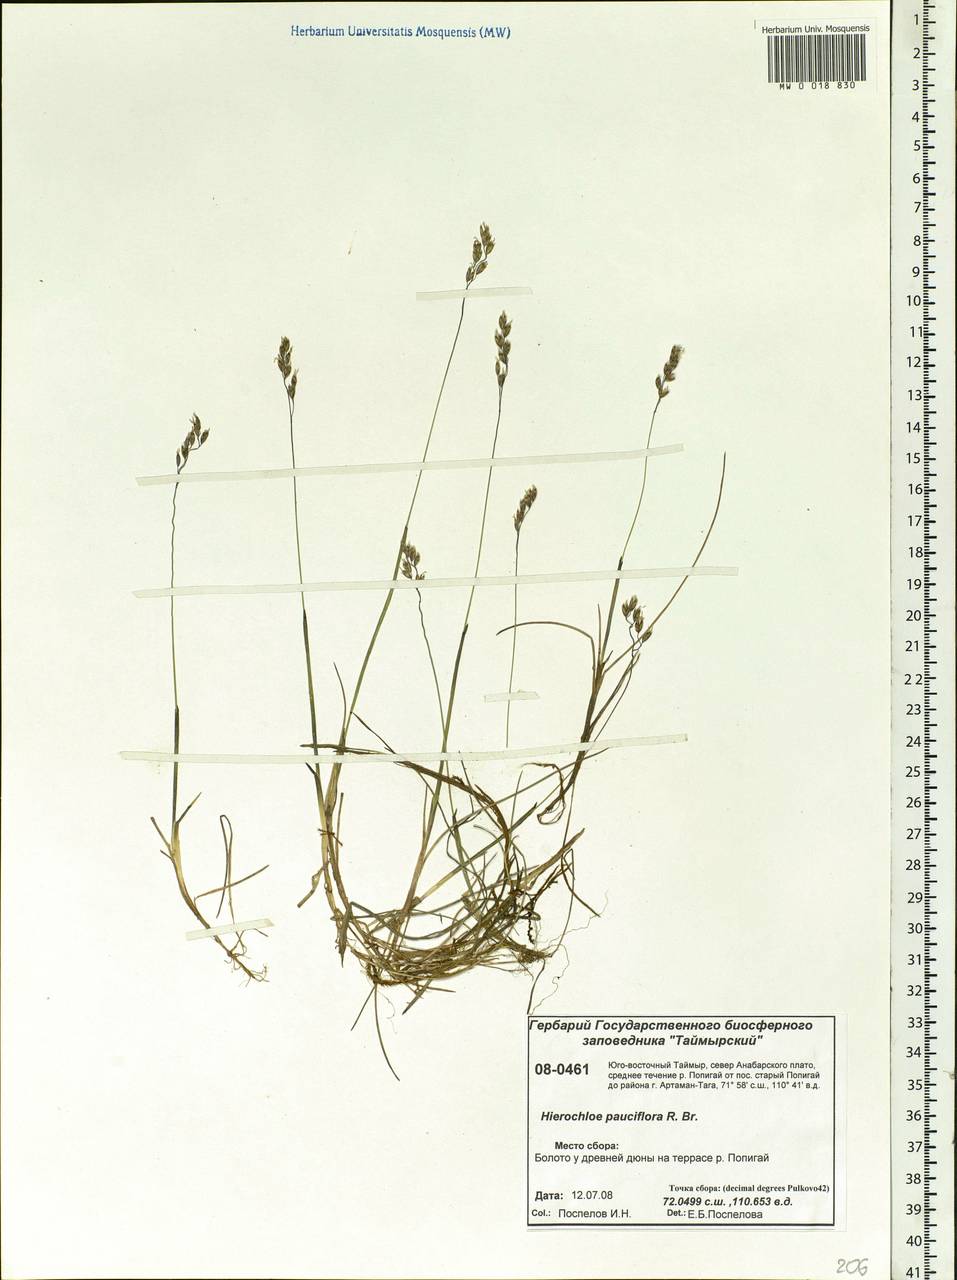 Anthoxanthum arcticum Veldkamp, Siberia, Central Siberia (S3) (Russia)